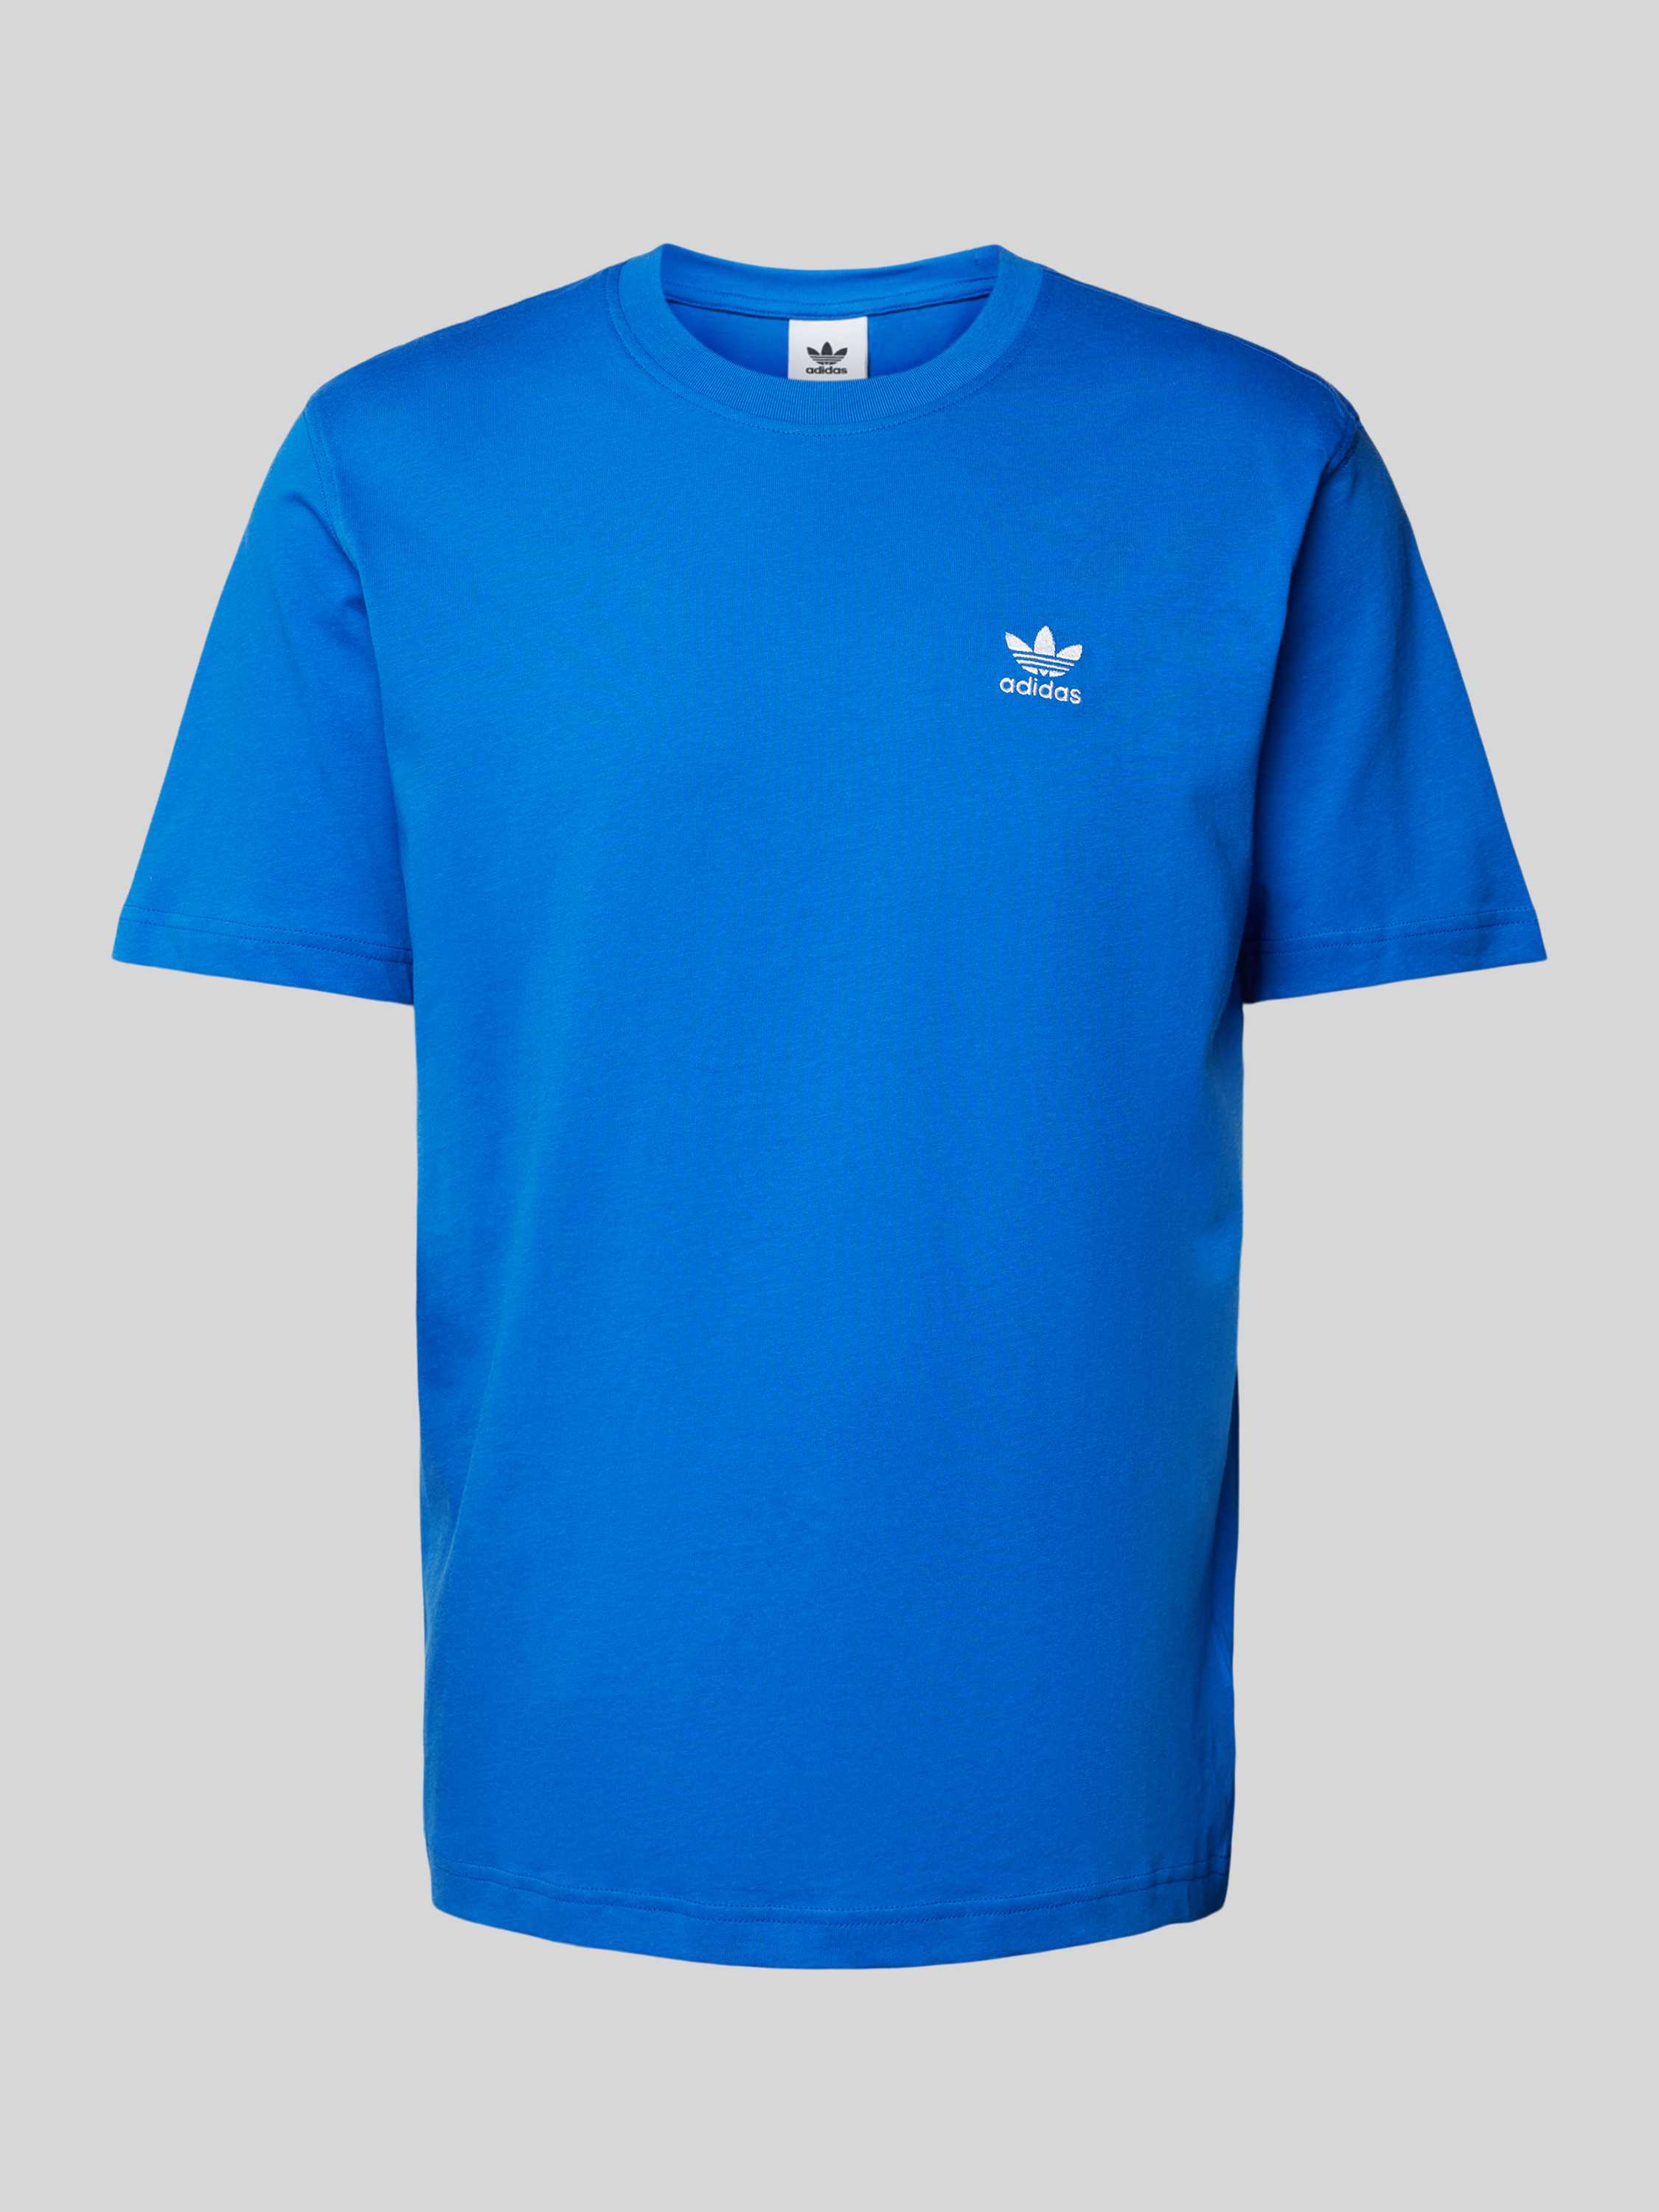 Adidas Originals Essentials T-shirt T-shirts Heren blue maat: XL beschikbare maaten:S M L XL